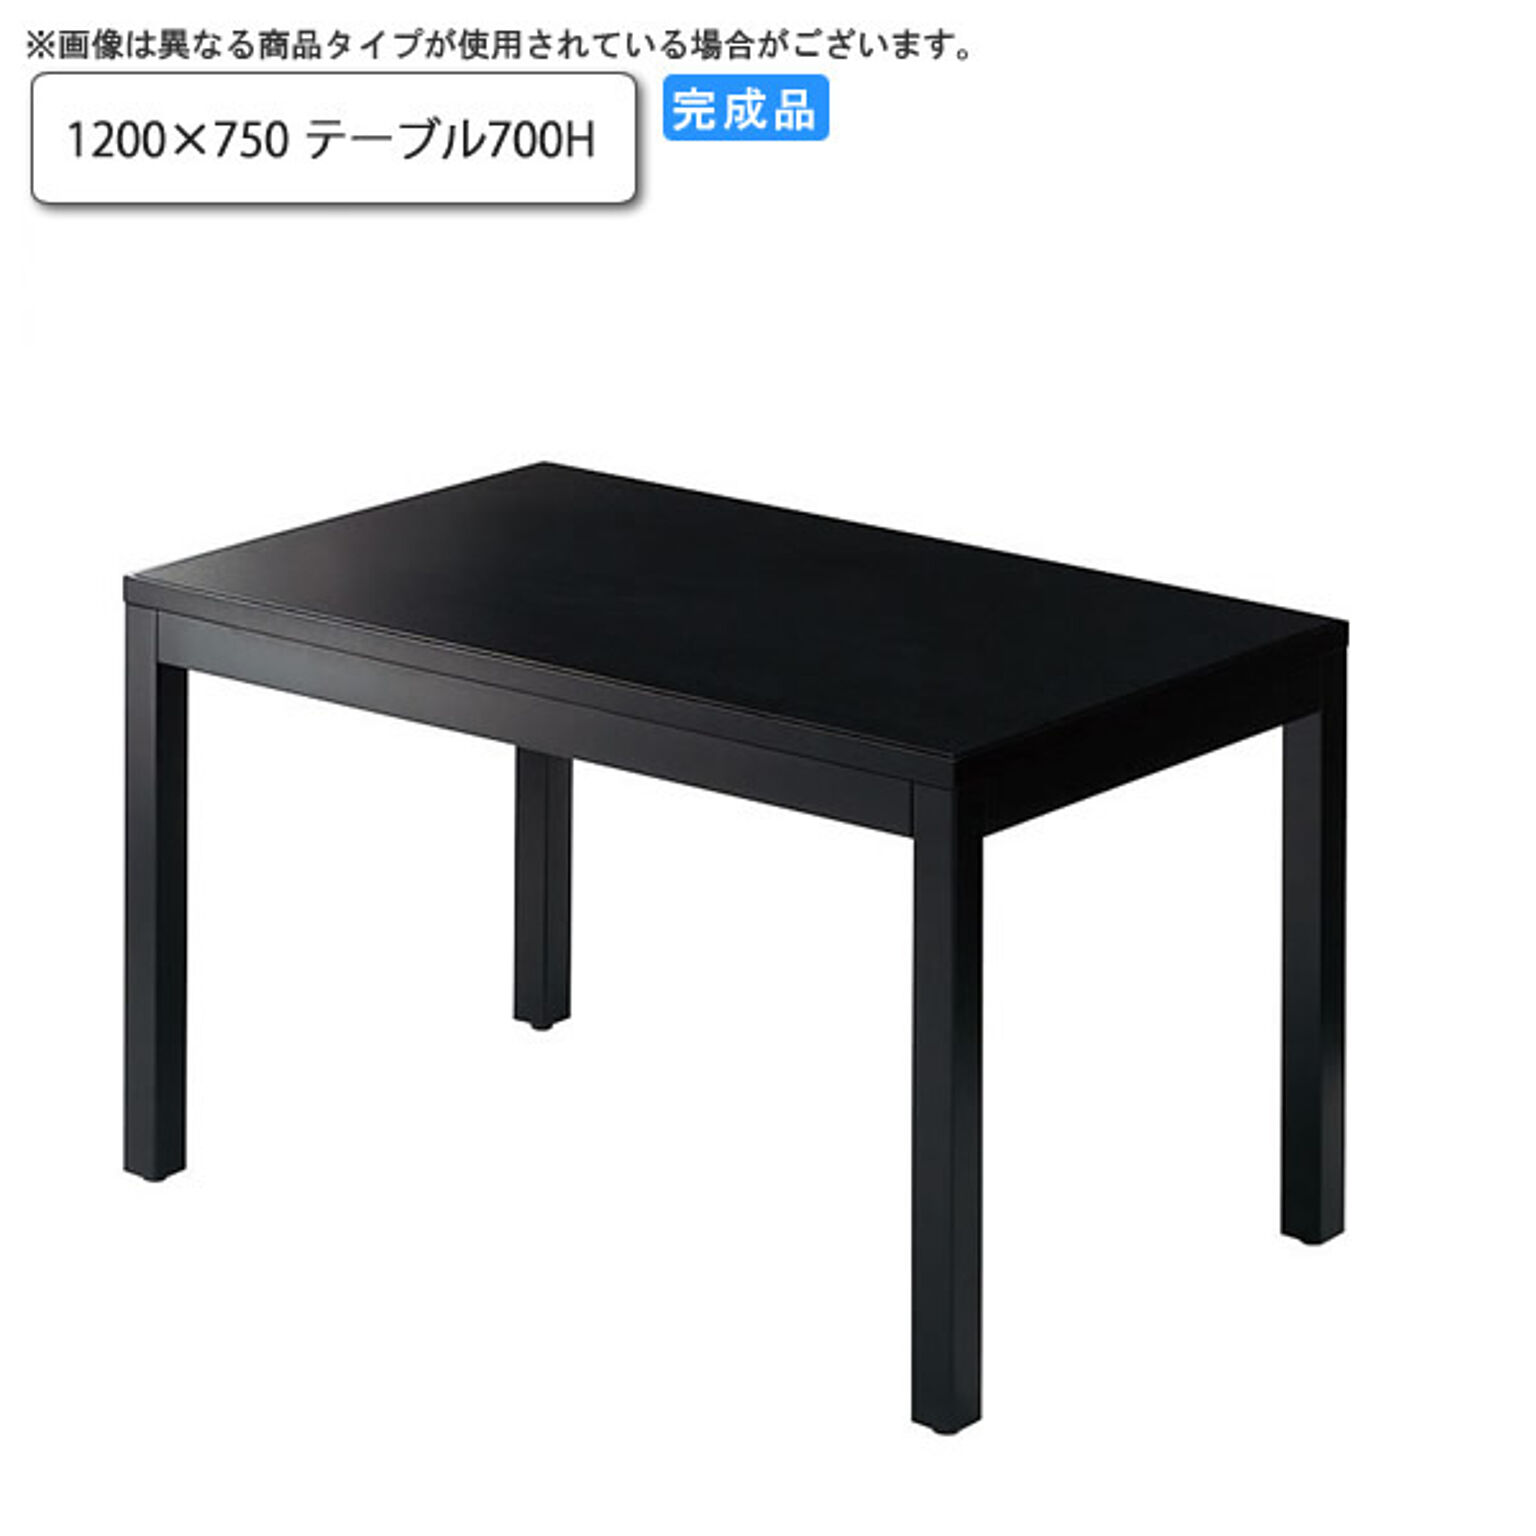 トリミナ 1200×750 ダイニングテーブル 700H 業務用家具 和風 wood japaneseシリーズ